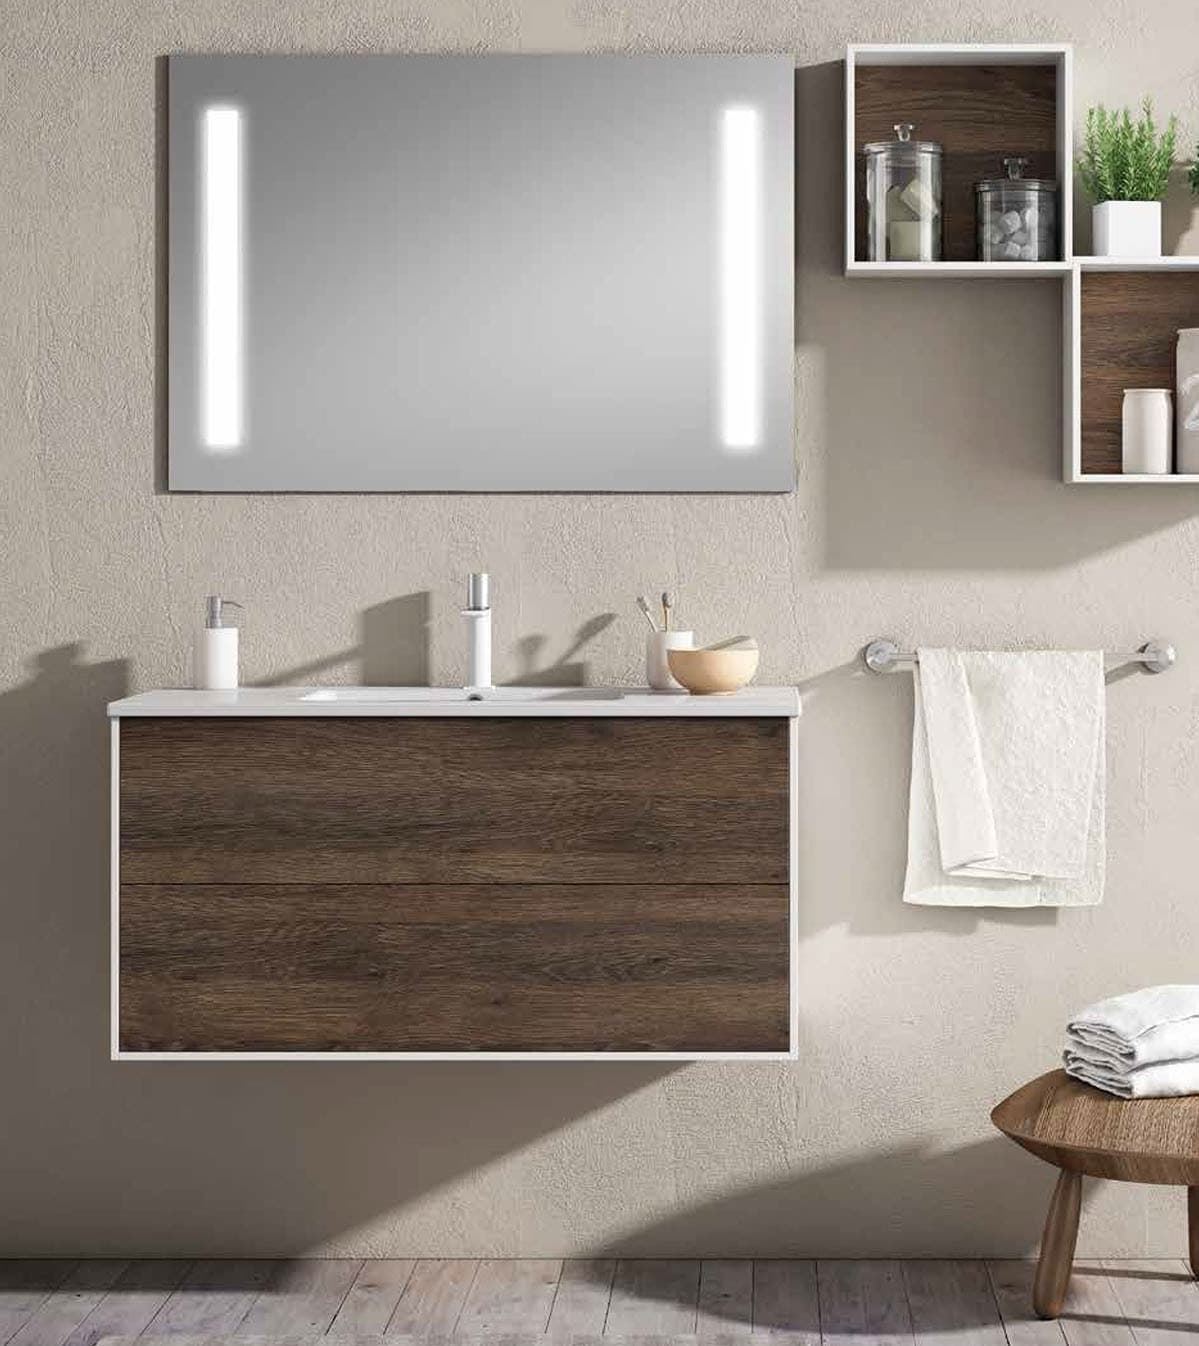 Cómo elegir el espejo de baño perfecto: Guía completa para encontrar el espejo ideal - Imagen 1